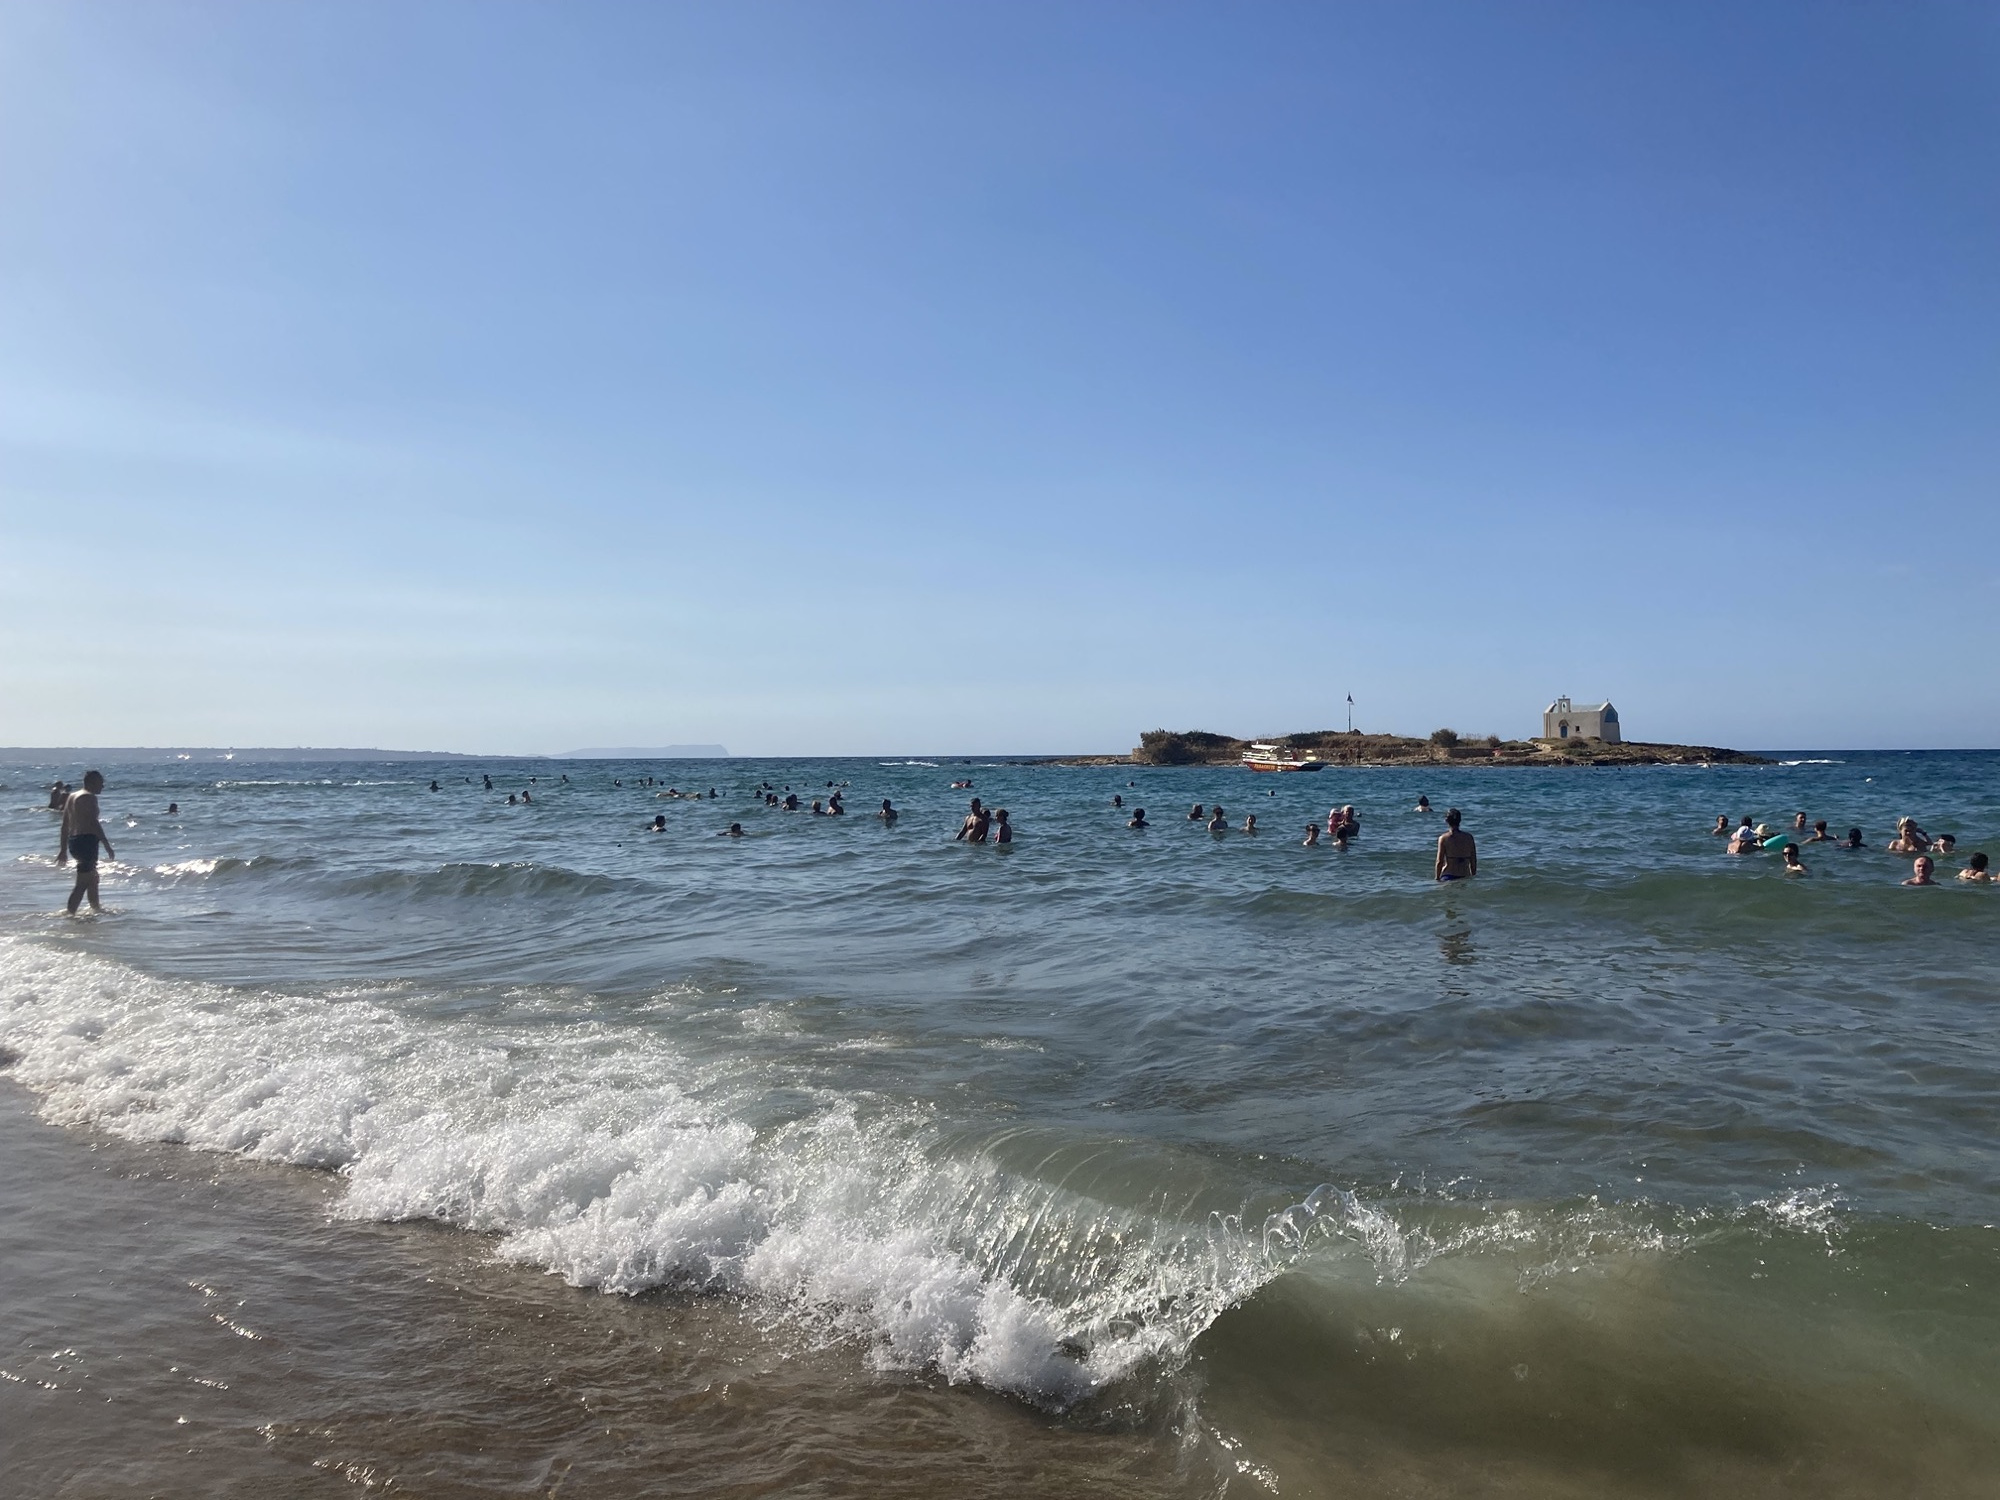 Strand von Malia, die Wellen brechen sich am Ufer, im seichten Wasser baden viele Menschen, im Hintergrund ist die Insel zu sehen, auf der sich eine kleine Kirche und ein Geocache befinden